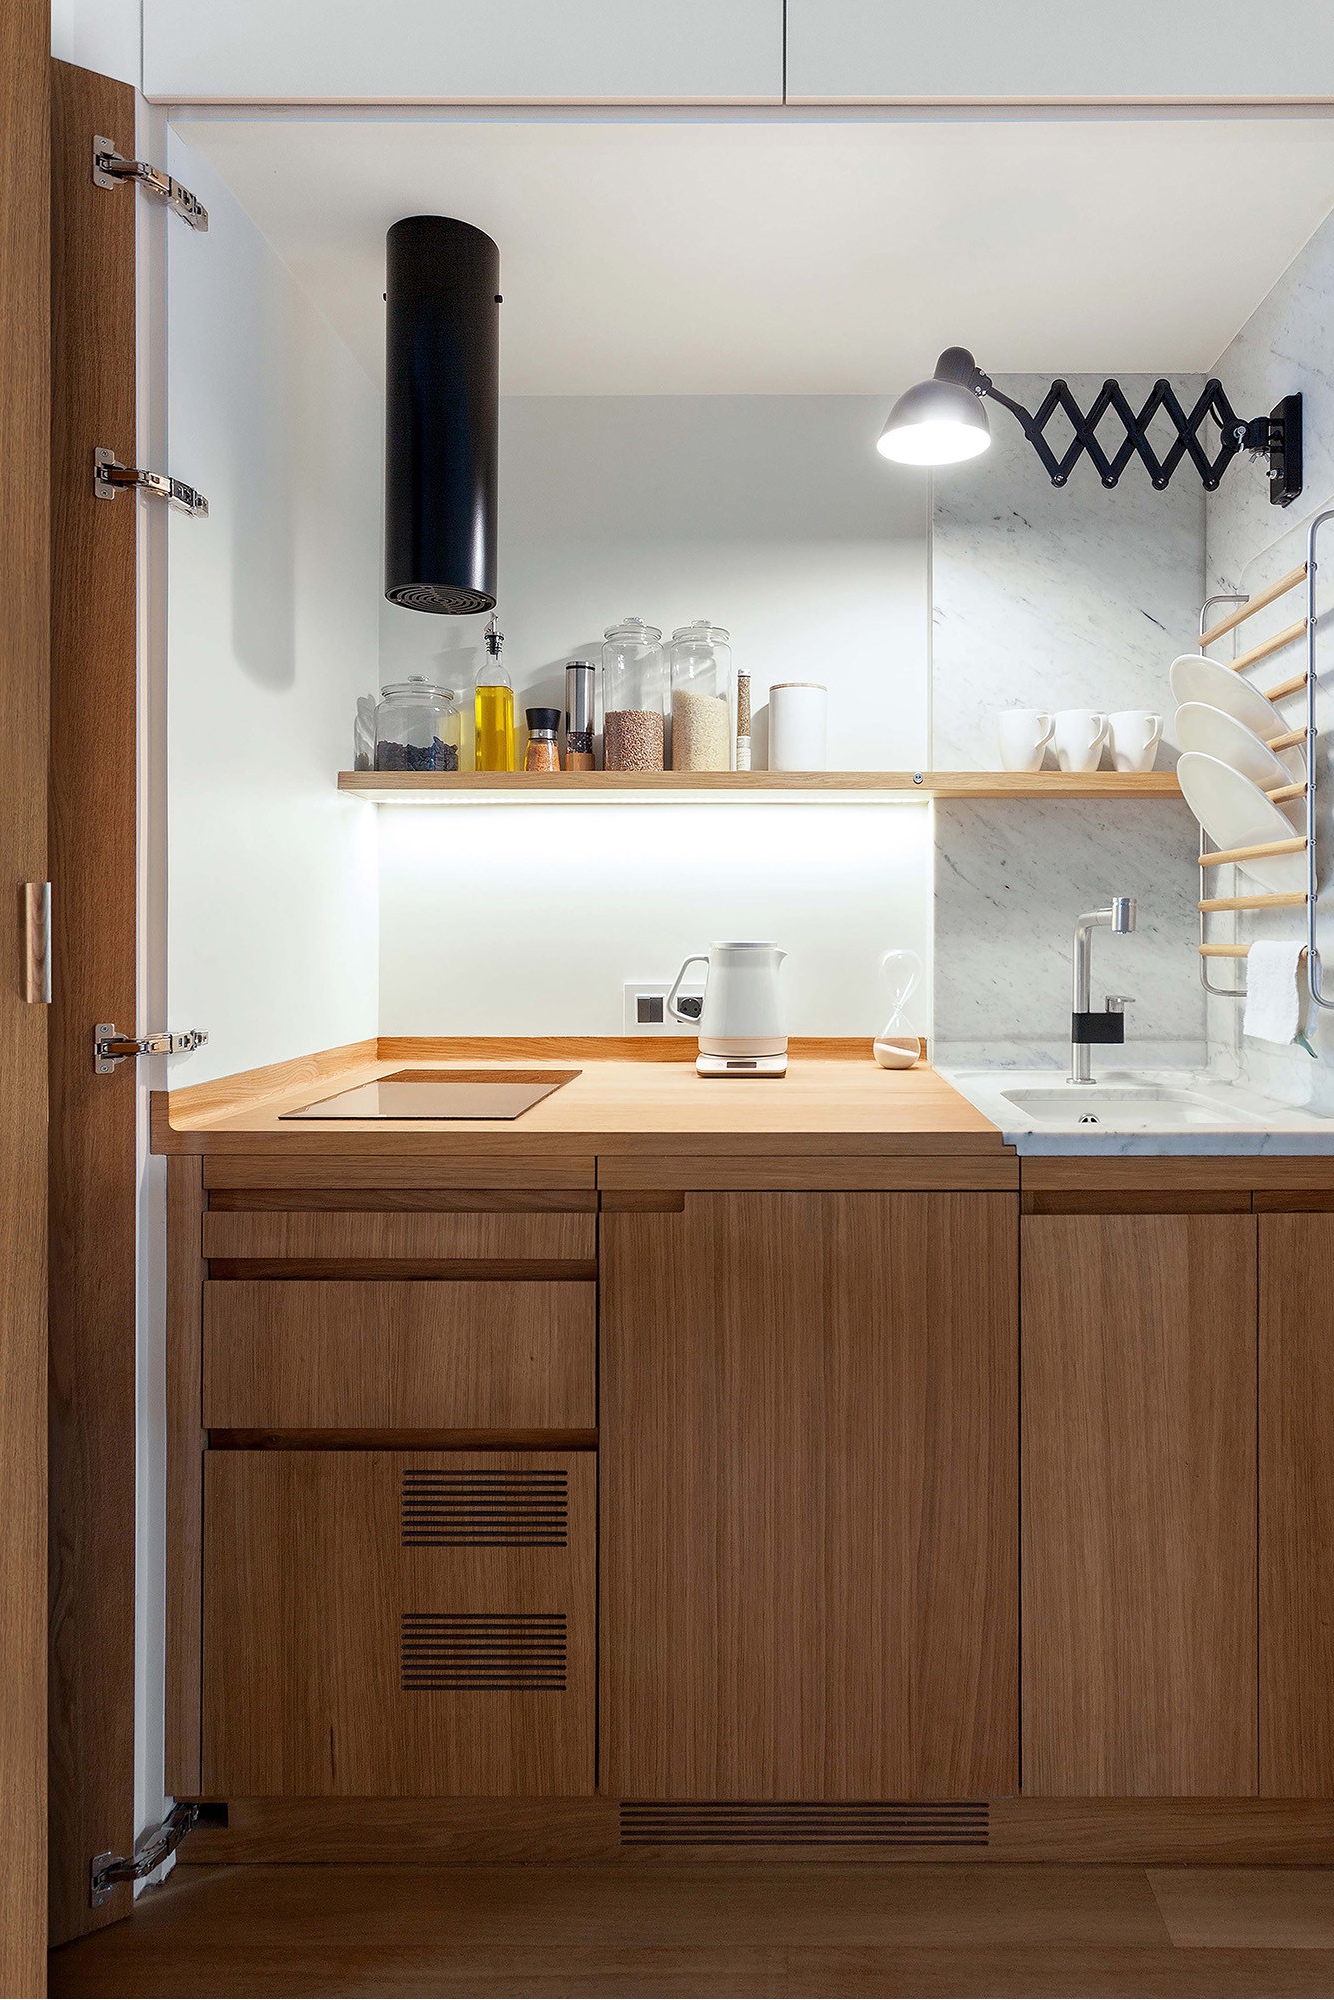 Московская квартира студия-трансформер с кухней в шкафу